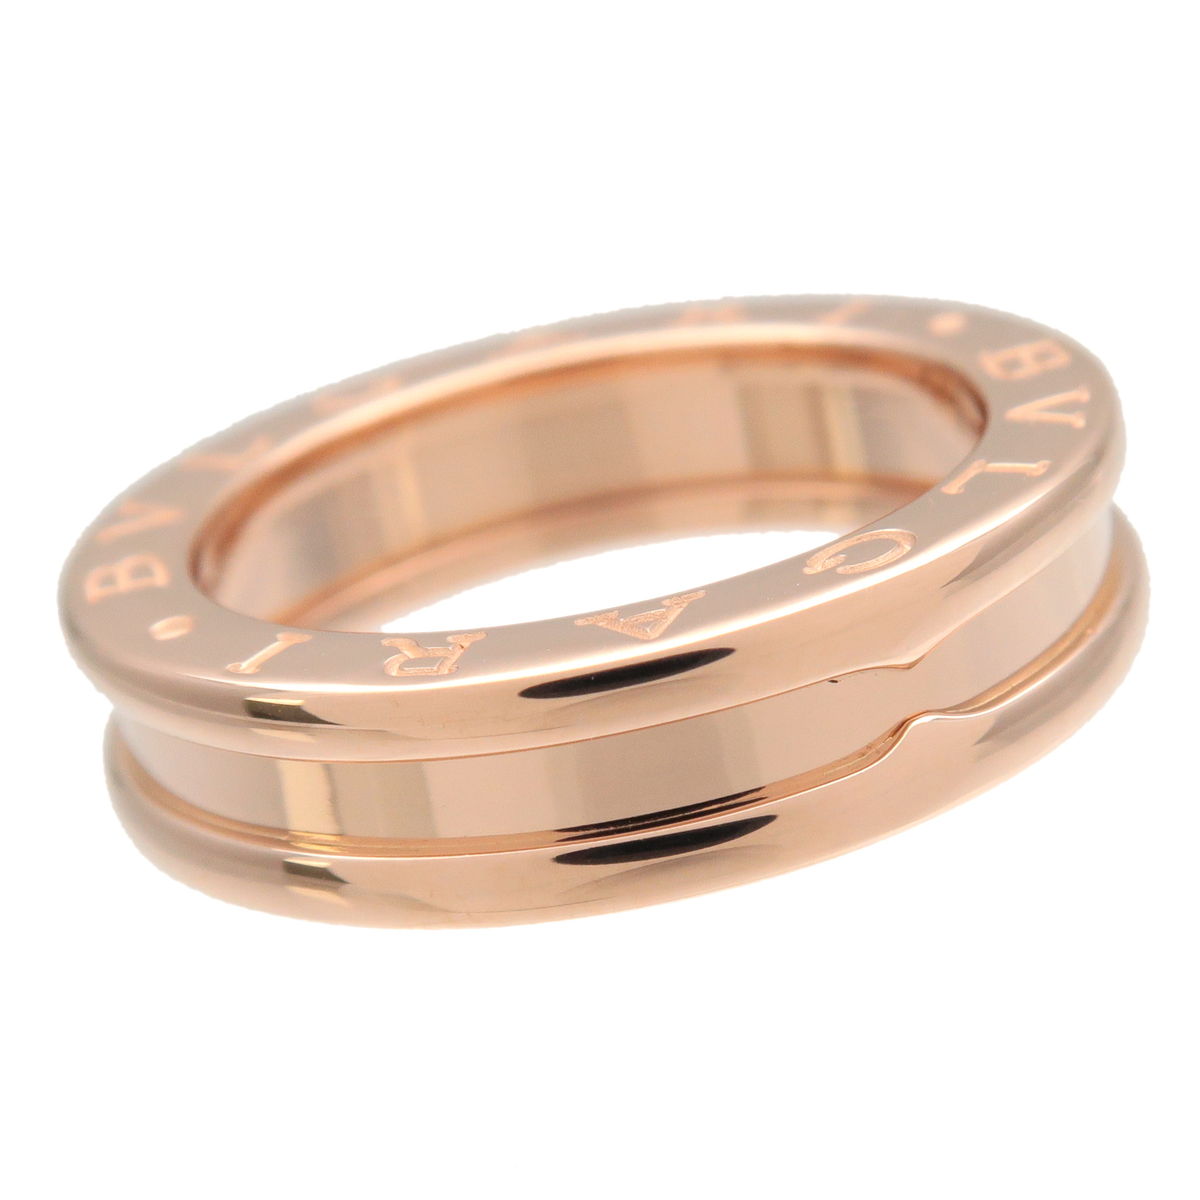 BVLGARI B-Zero1 Ring XS 1 Band Ring K18 750 Rose Gold #49 US5